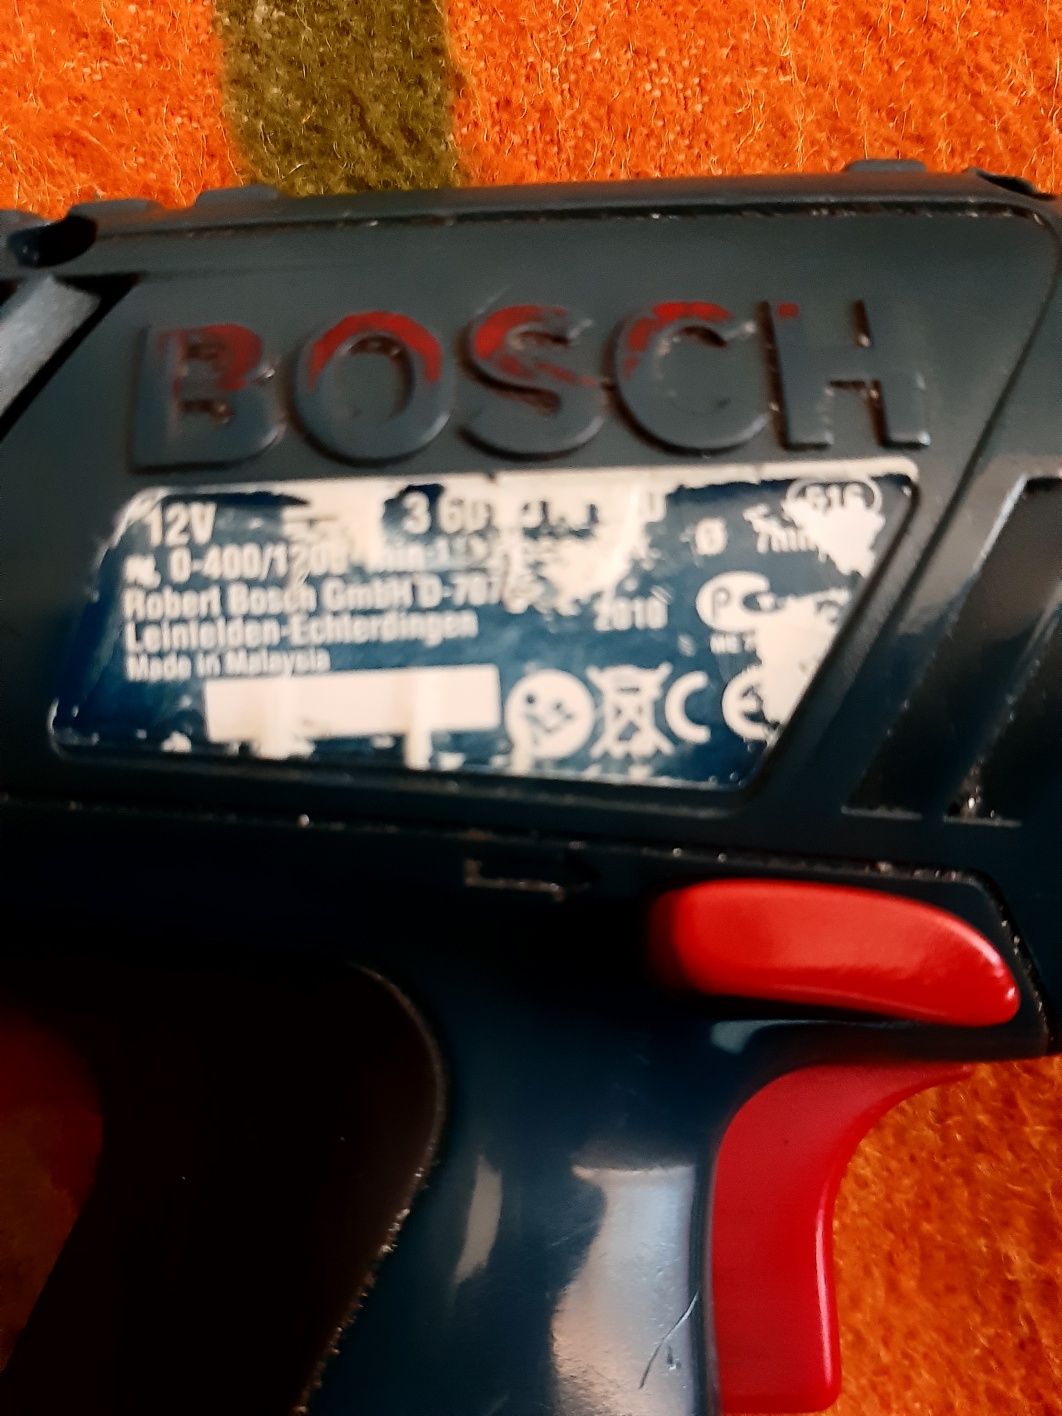 Wkrętarka Bosch GSR 12-2, uszkodzona